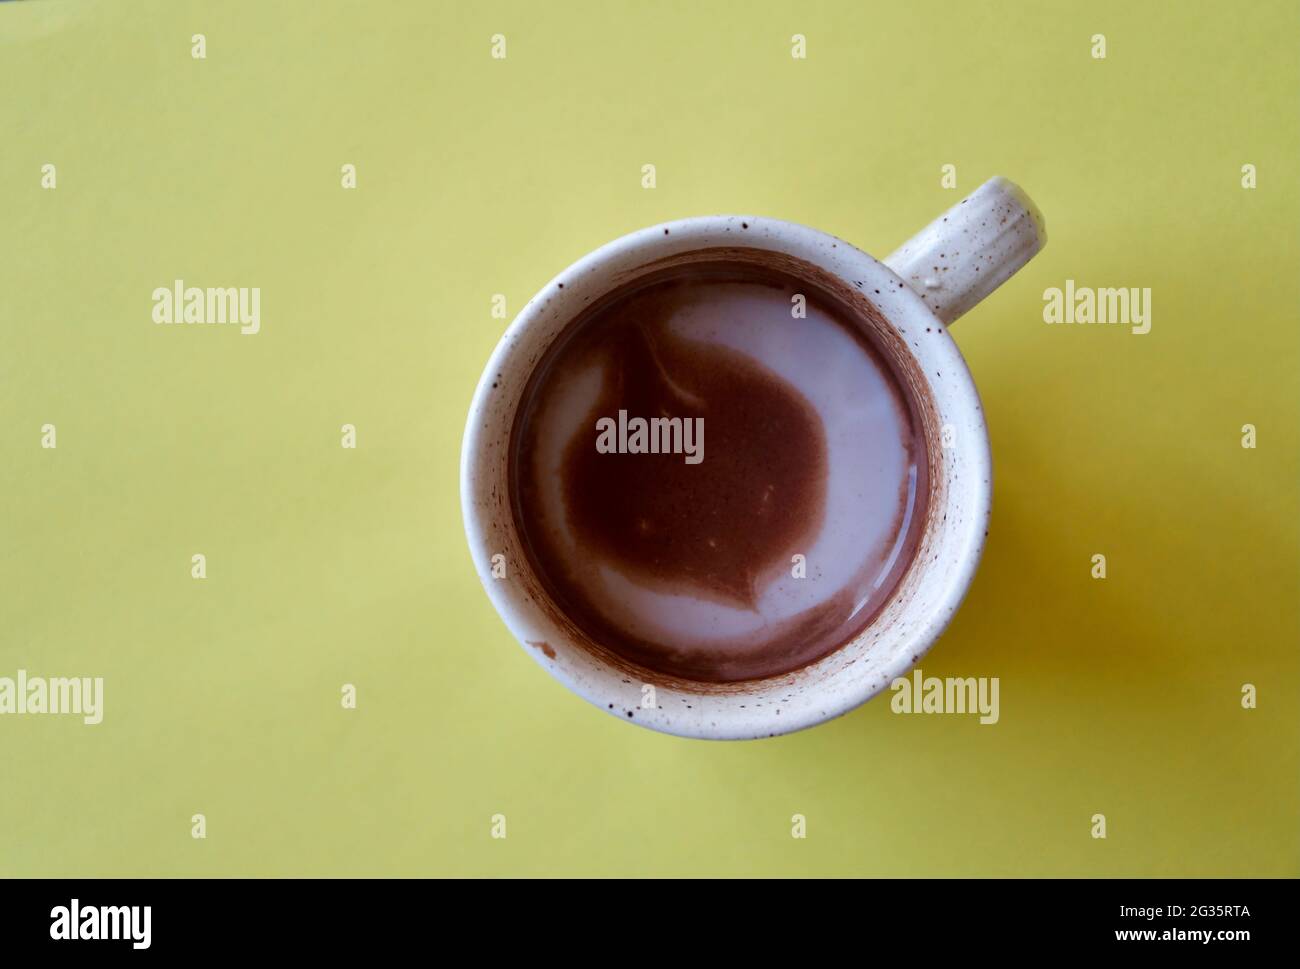 Foto de arriba de una taza de chocolate caliente sobre fondo amarillo Foto de stock